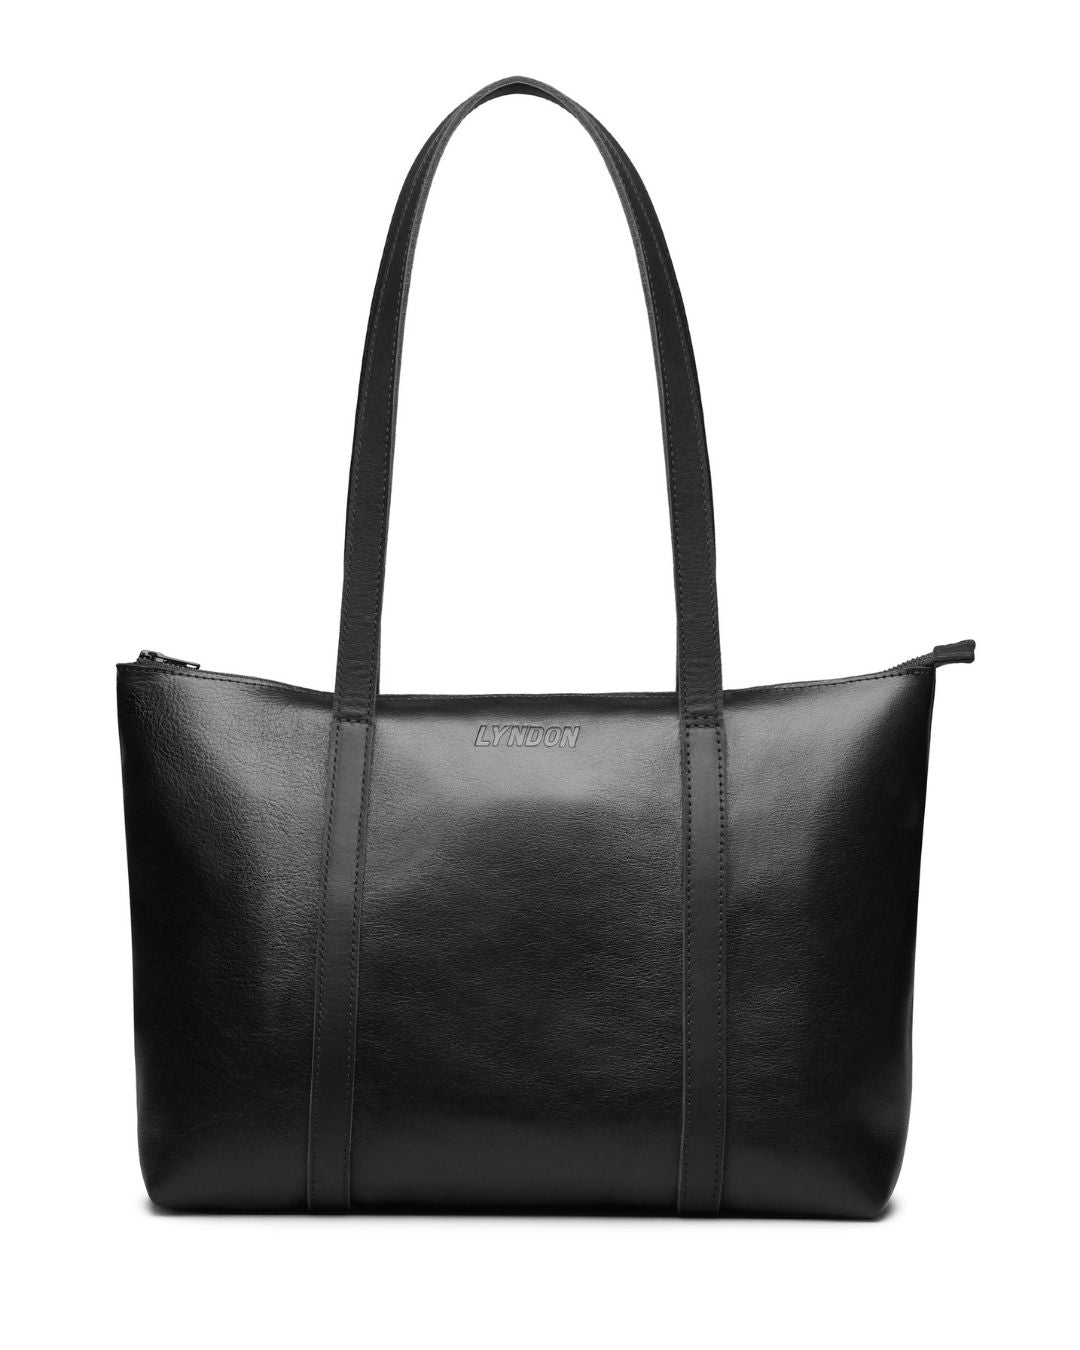 Leather Classic Tote Bag w/ Zipper